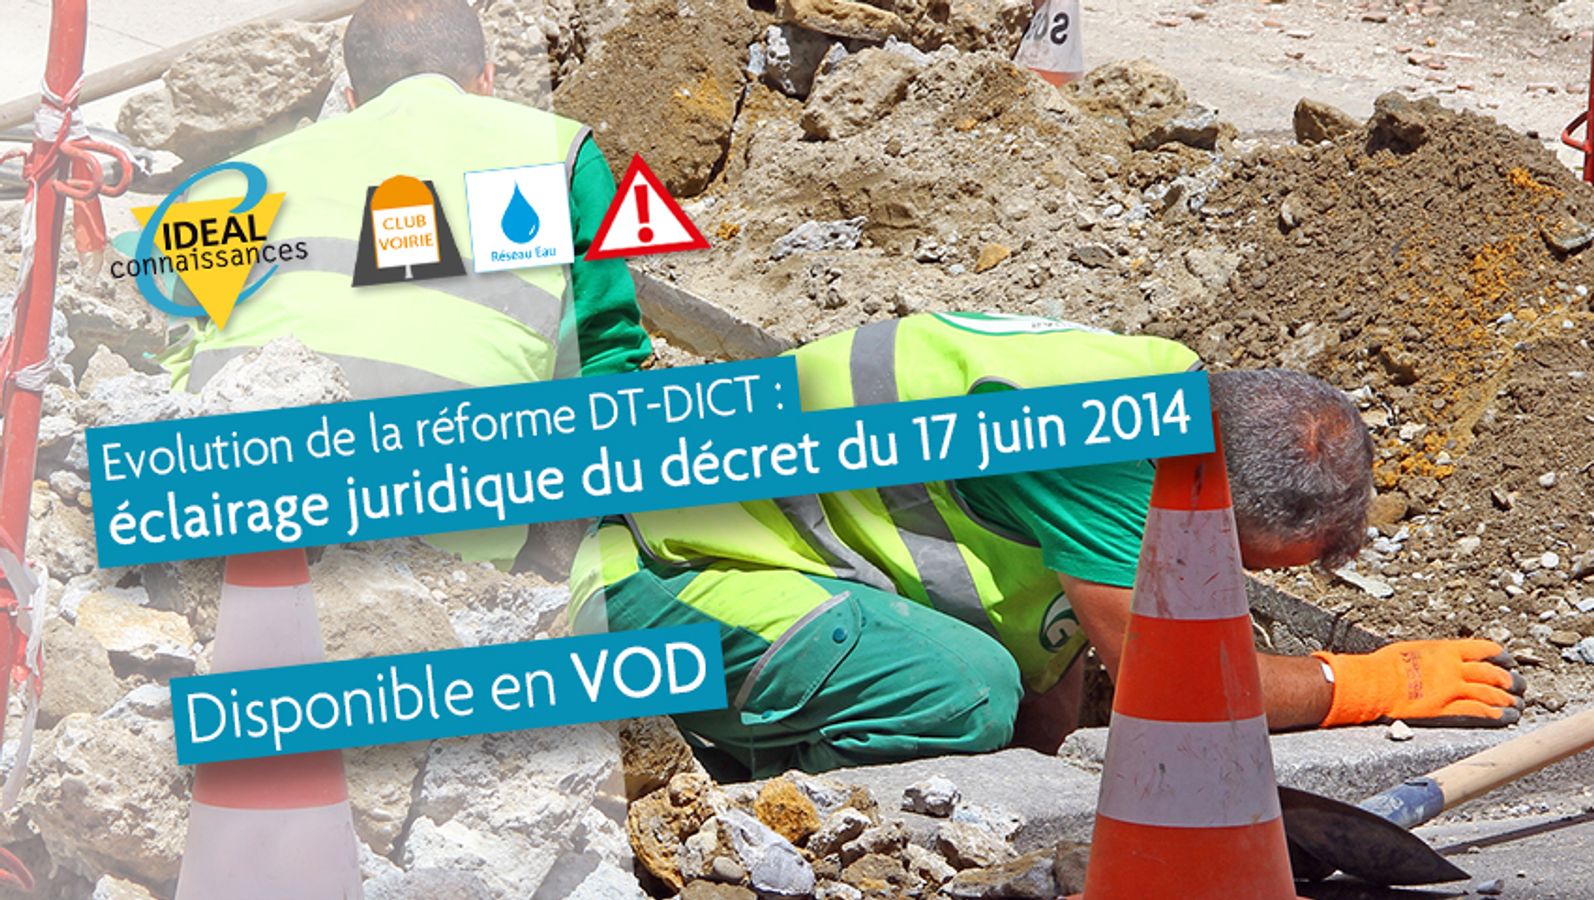 Evolution de la réforme DT-DICT: éclairage juridique du décret du 17 juin 2014